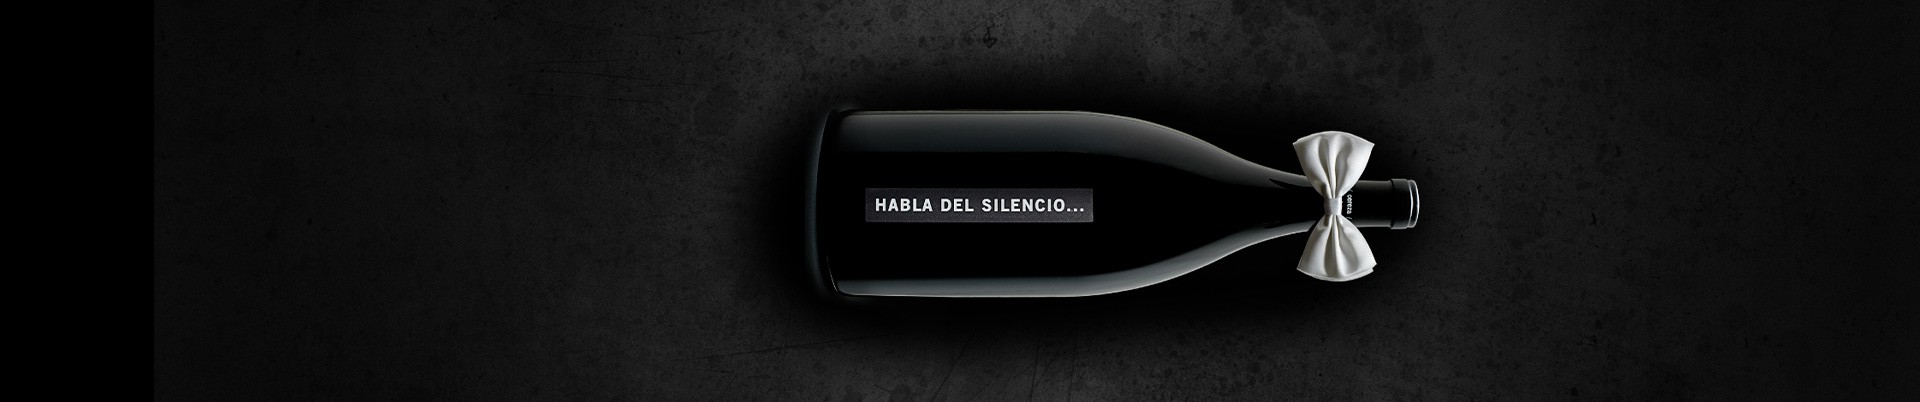 Vino y Más GmbH | WeinUndMehr Habla del silencio